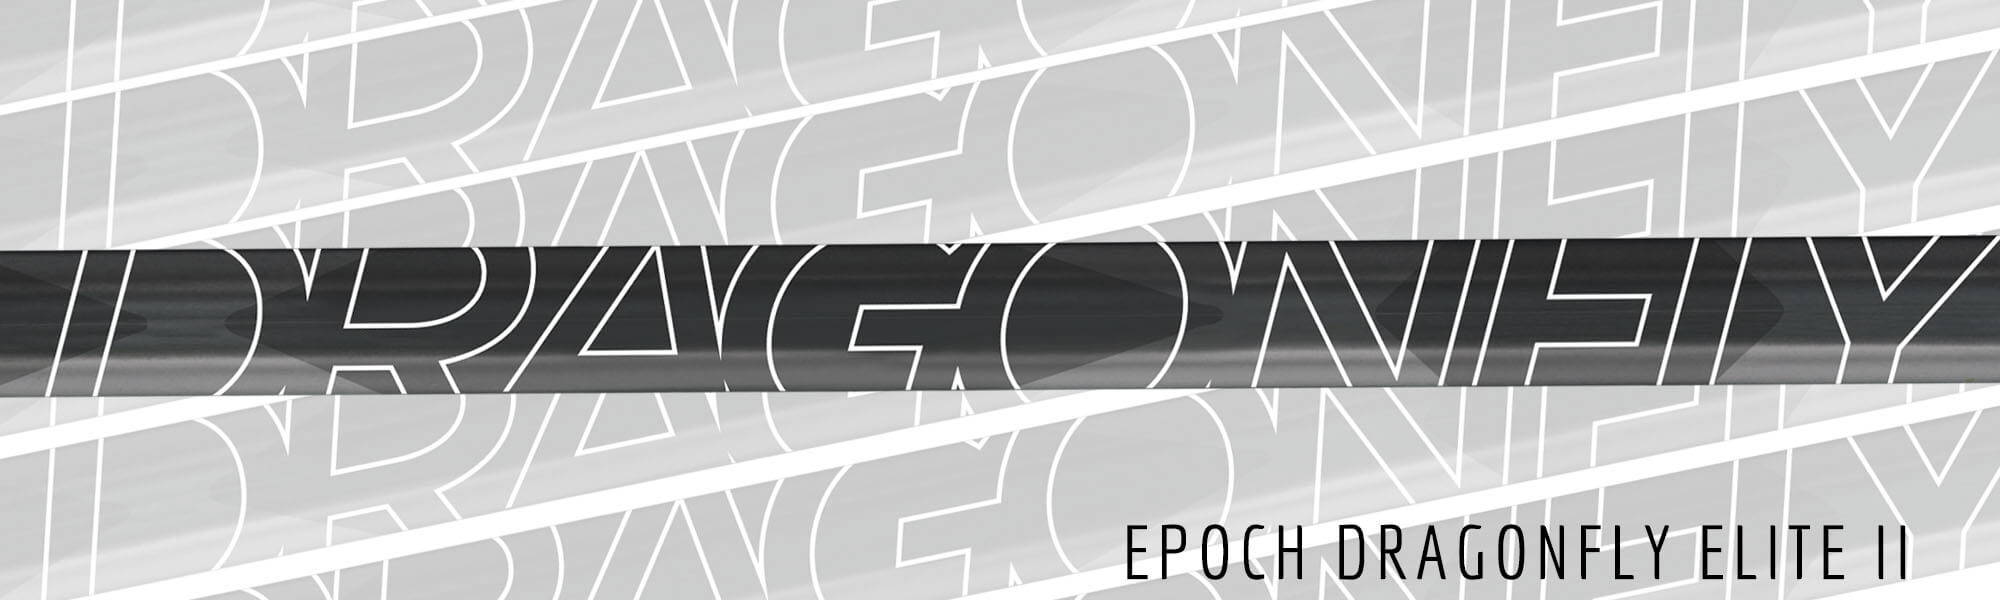 EPOCH DRAGONFLY ELITE II LACROSSE SHAFTS | TOP STRING LACROSSE